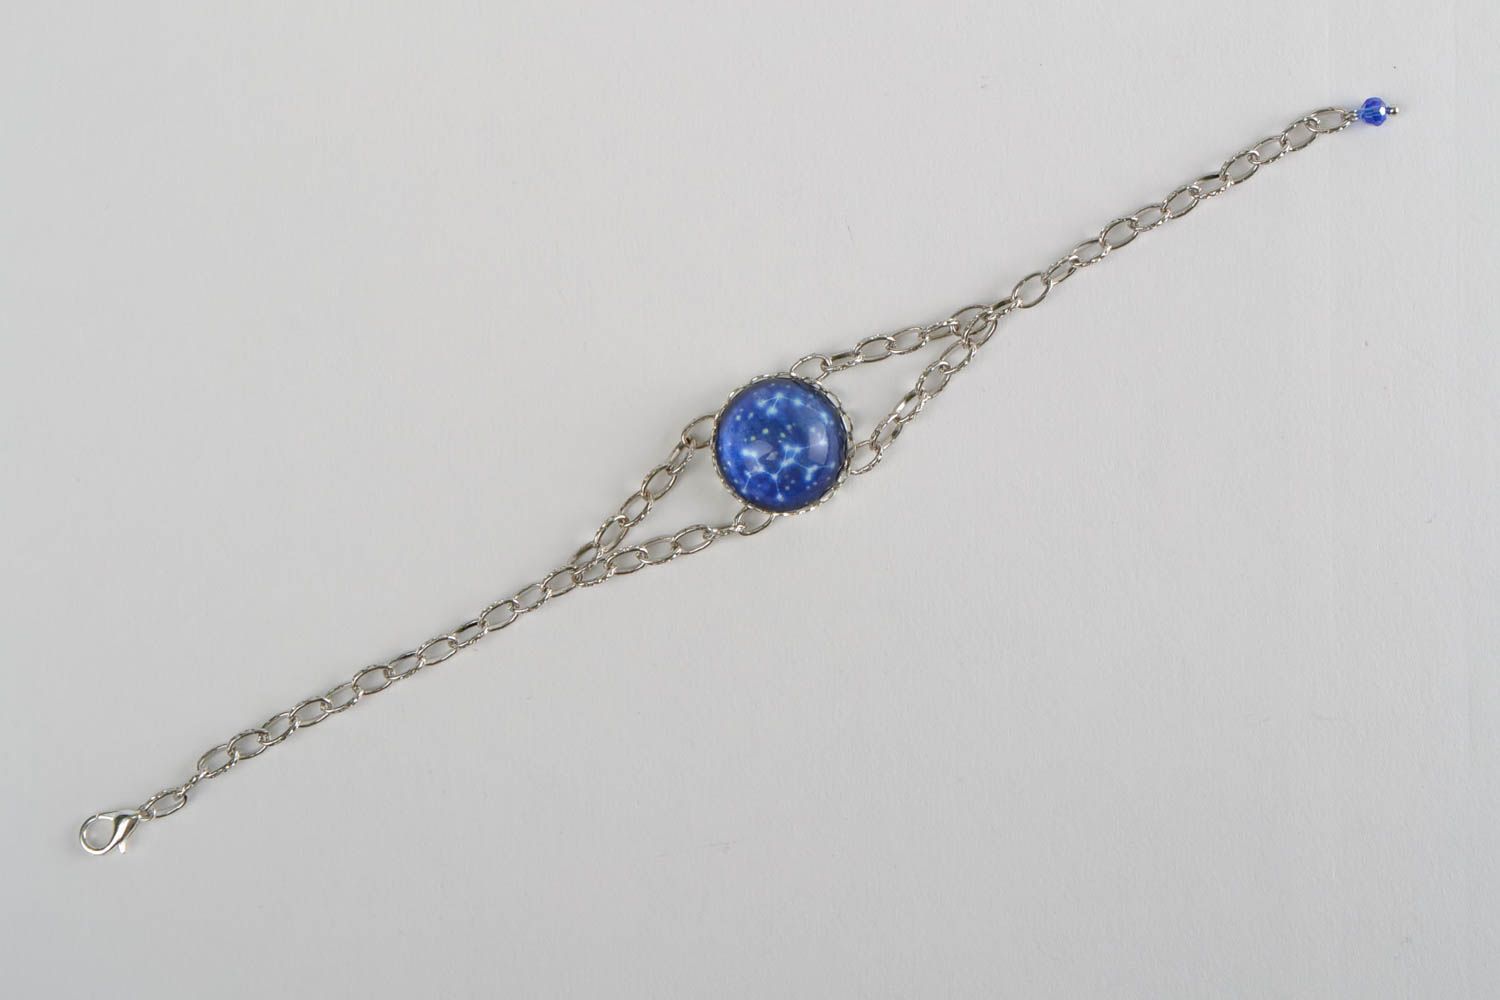 Zodiac wrist bracelet with chain and glass stylish handmade accessory photo 3